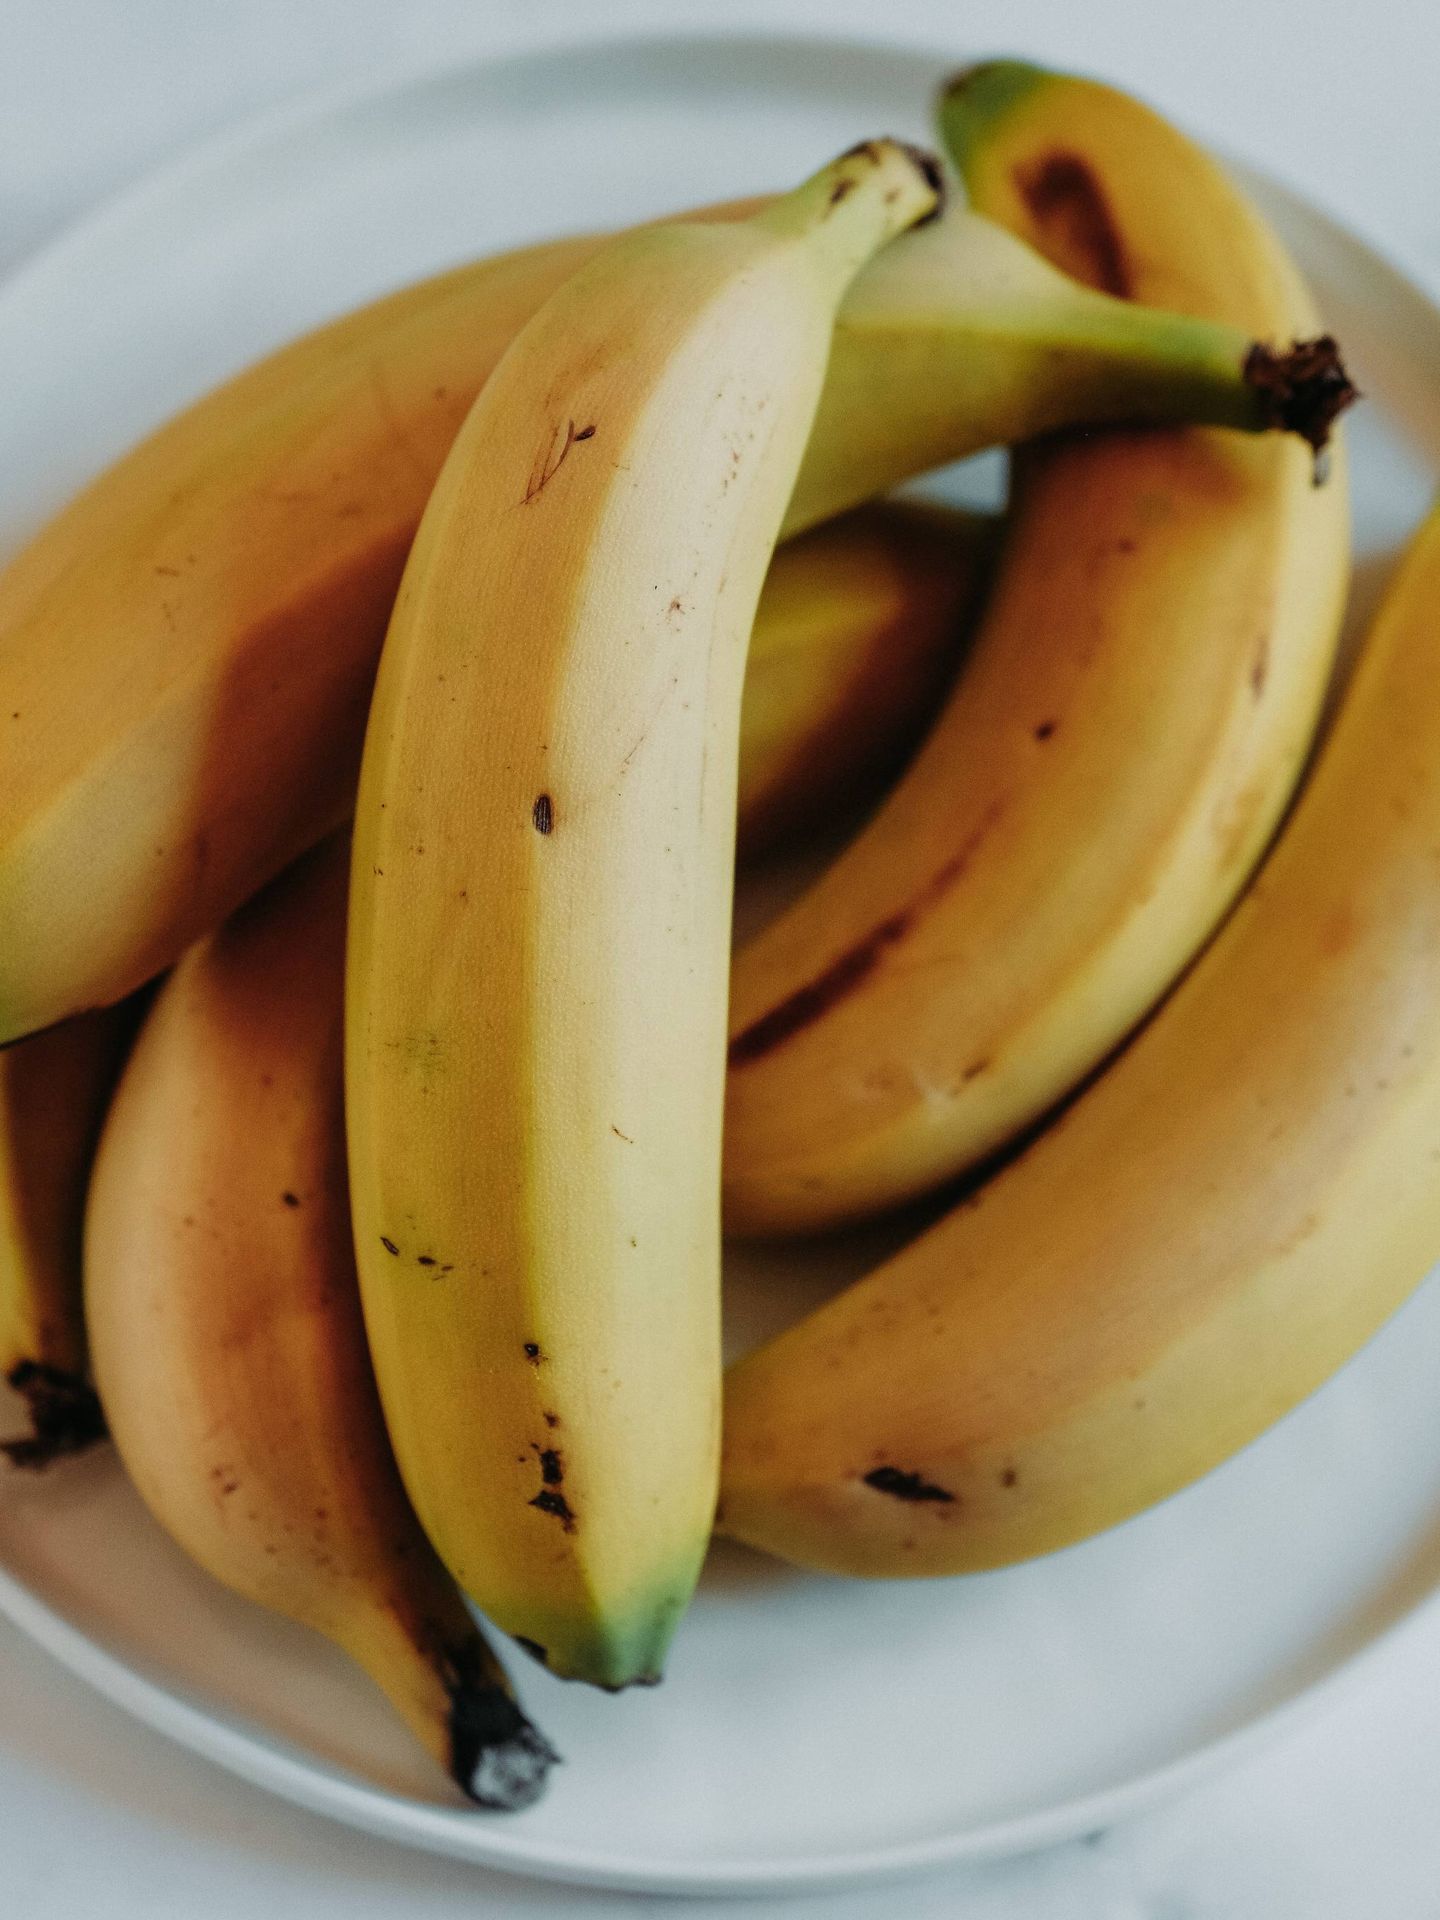 El plátano es un alimento rico en potasio. (Jeff Siepman para Unsplash)